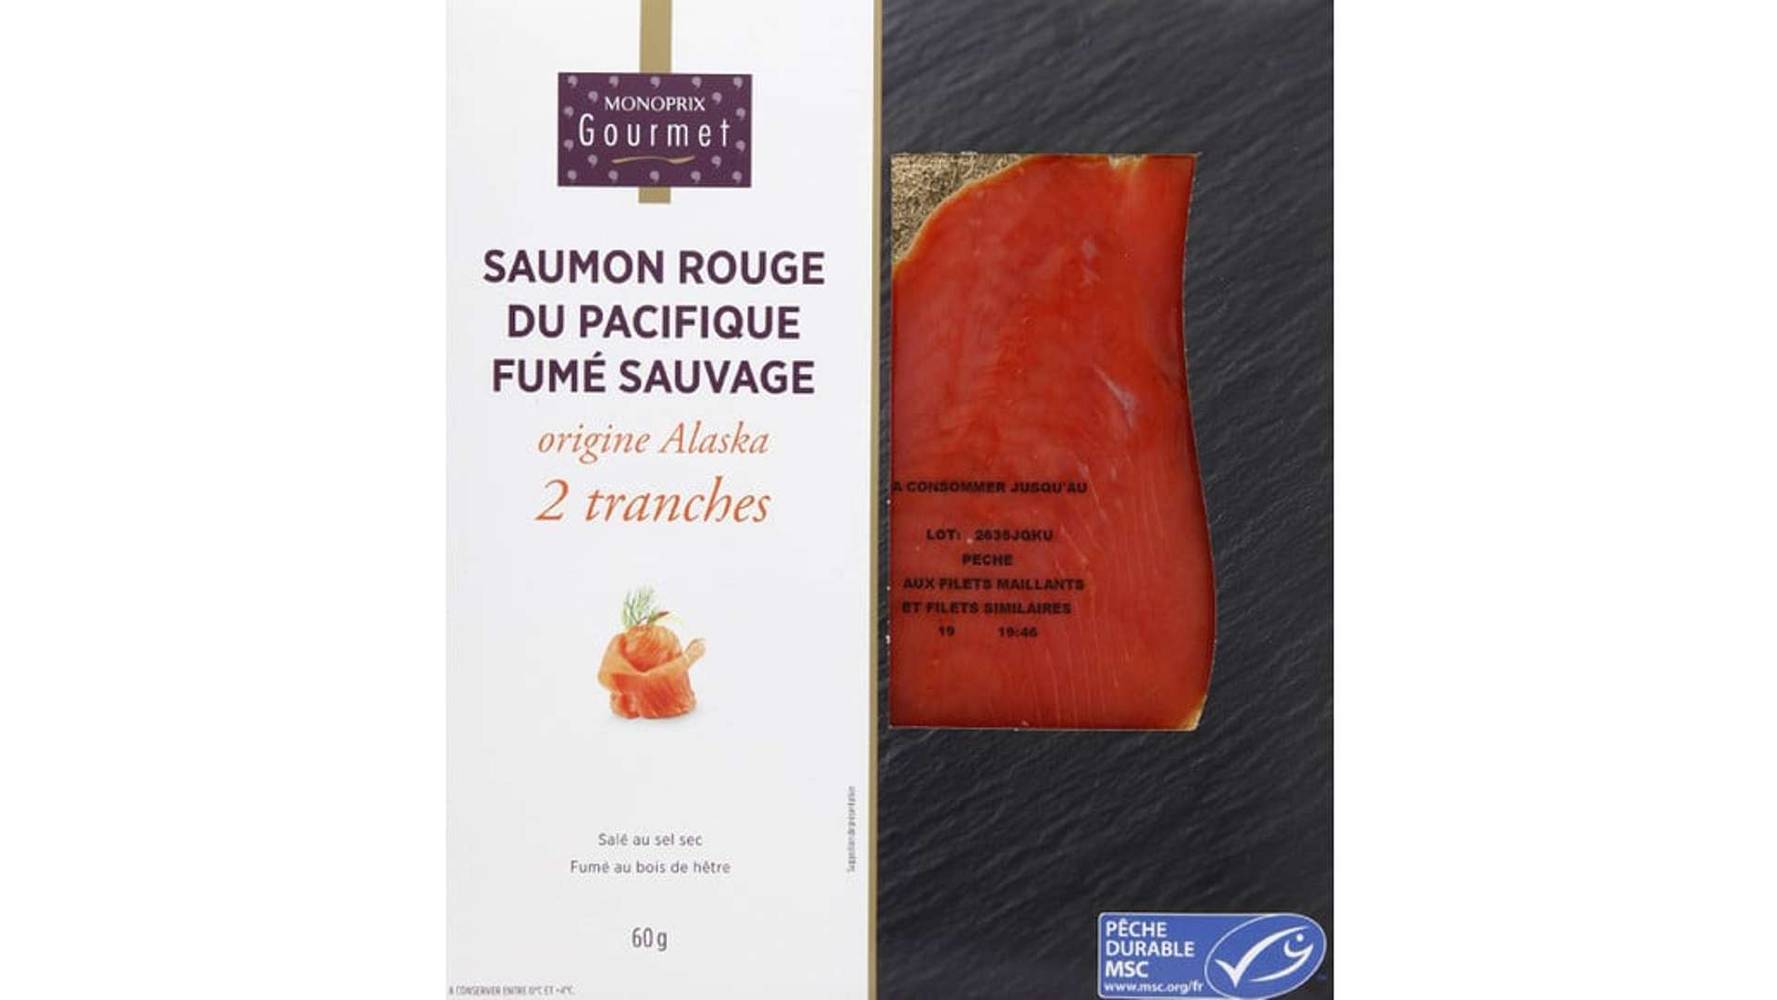 Monoprix Gourmet Saumon rouge du Pacifique fumé sauvage Les 2 tranches, 60g